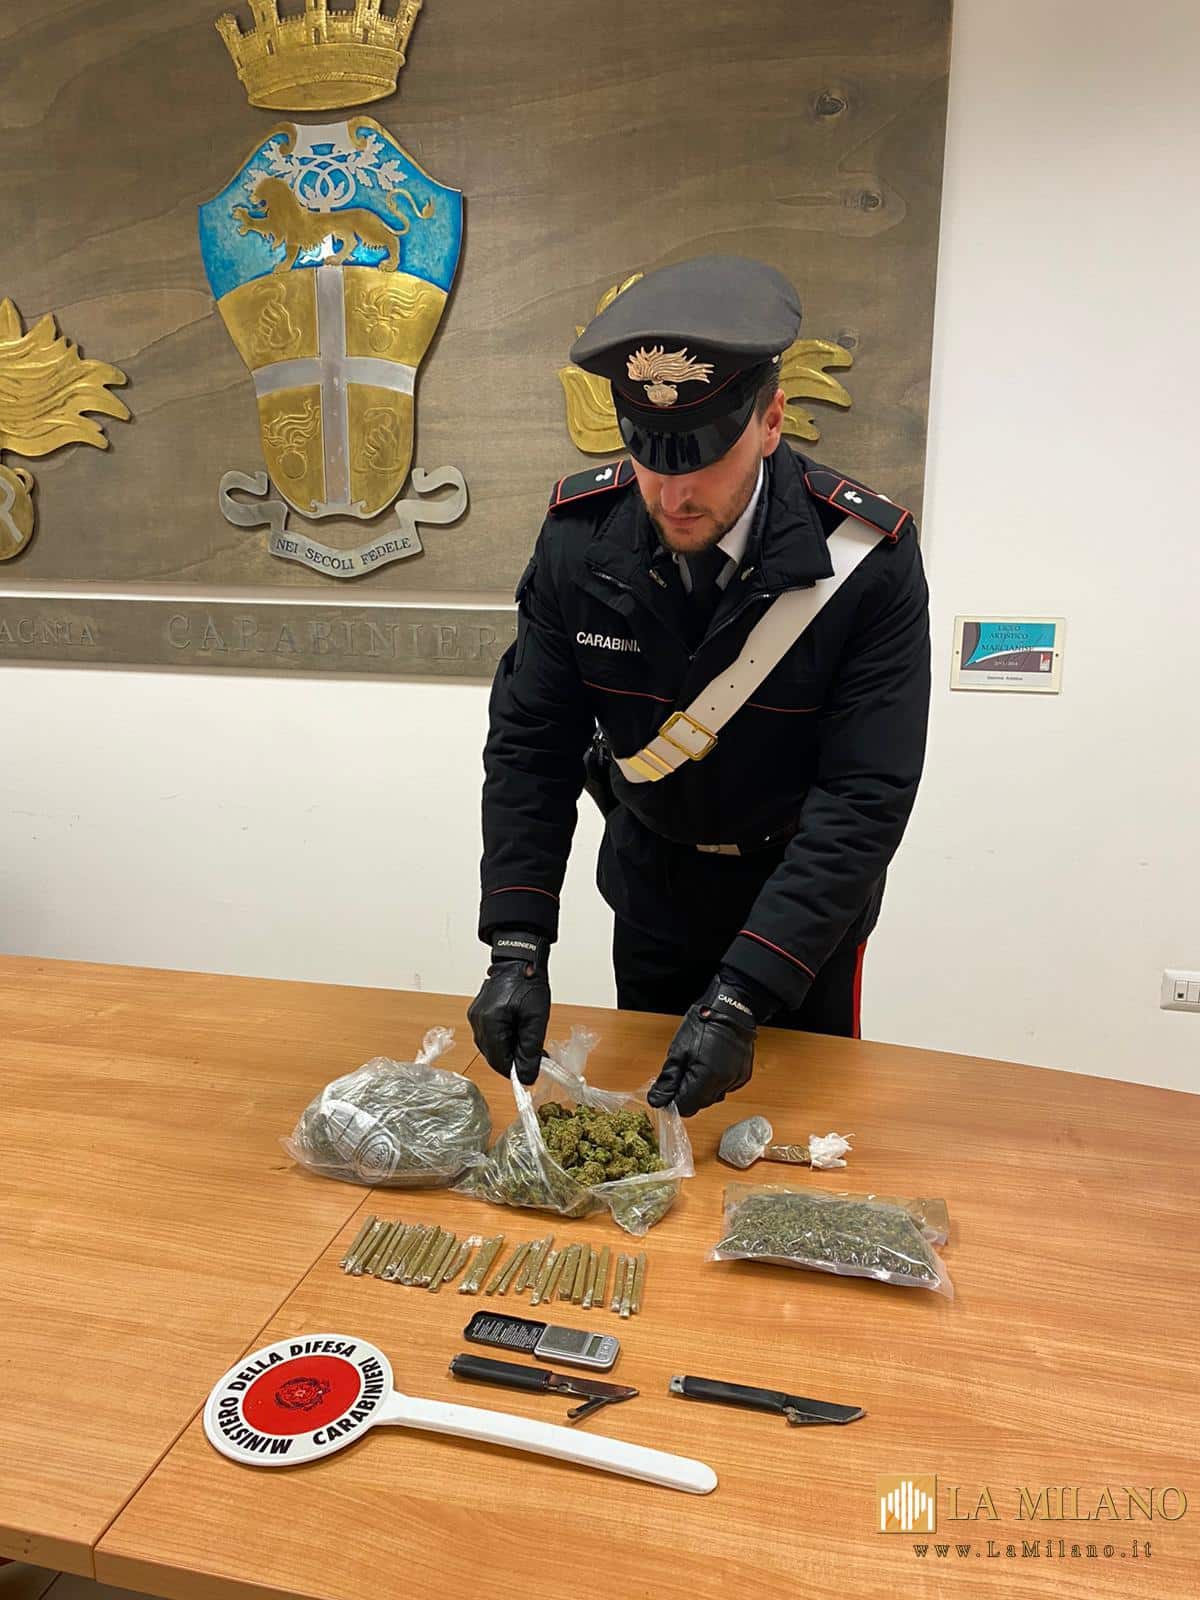 Orta di Atella: pusher trovato in possesso di stupefacenti e di due coltelli di fattura artigianale, arrestato dai Carabinieri.